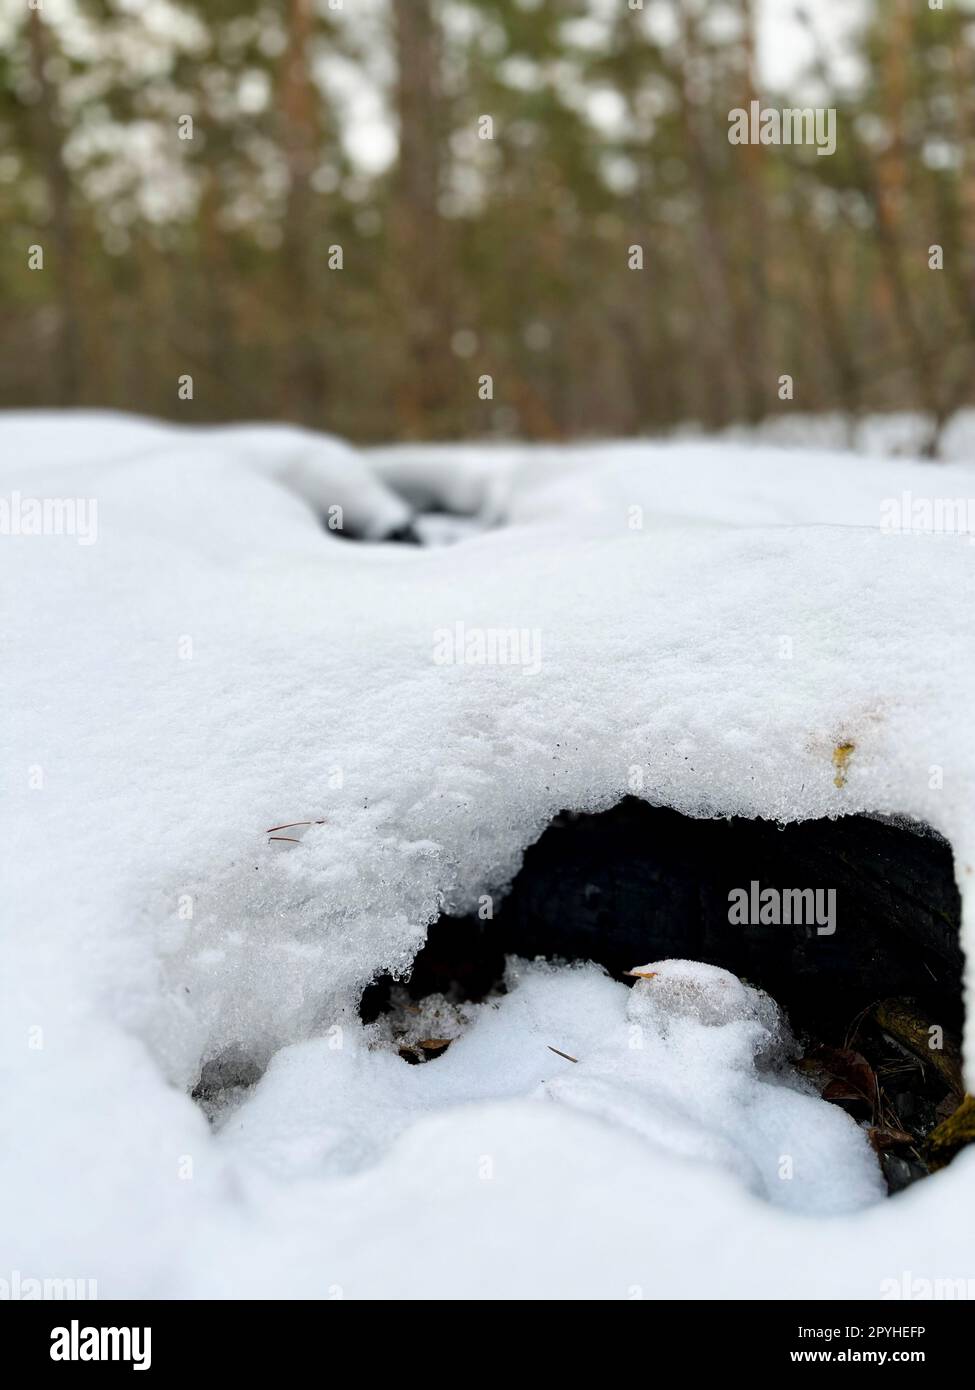 neige blanche enneigée dans une forêt de pins Banque D'Images